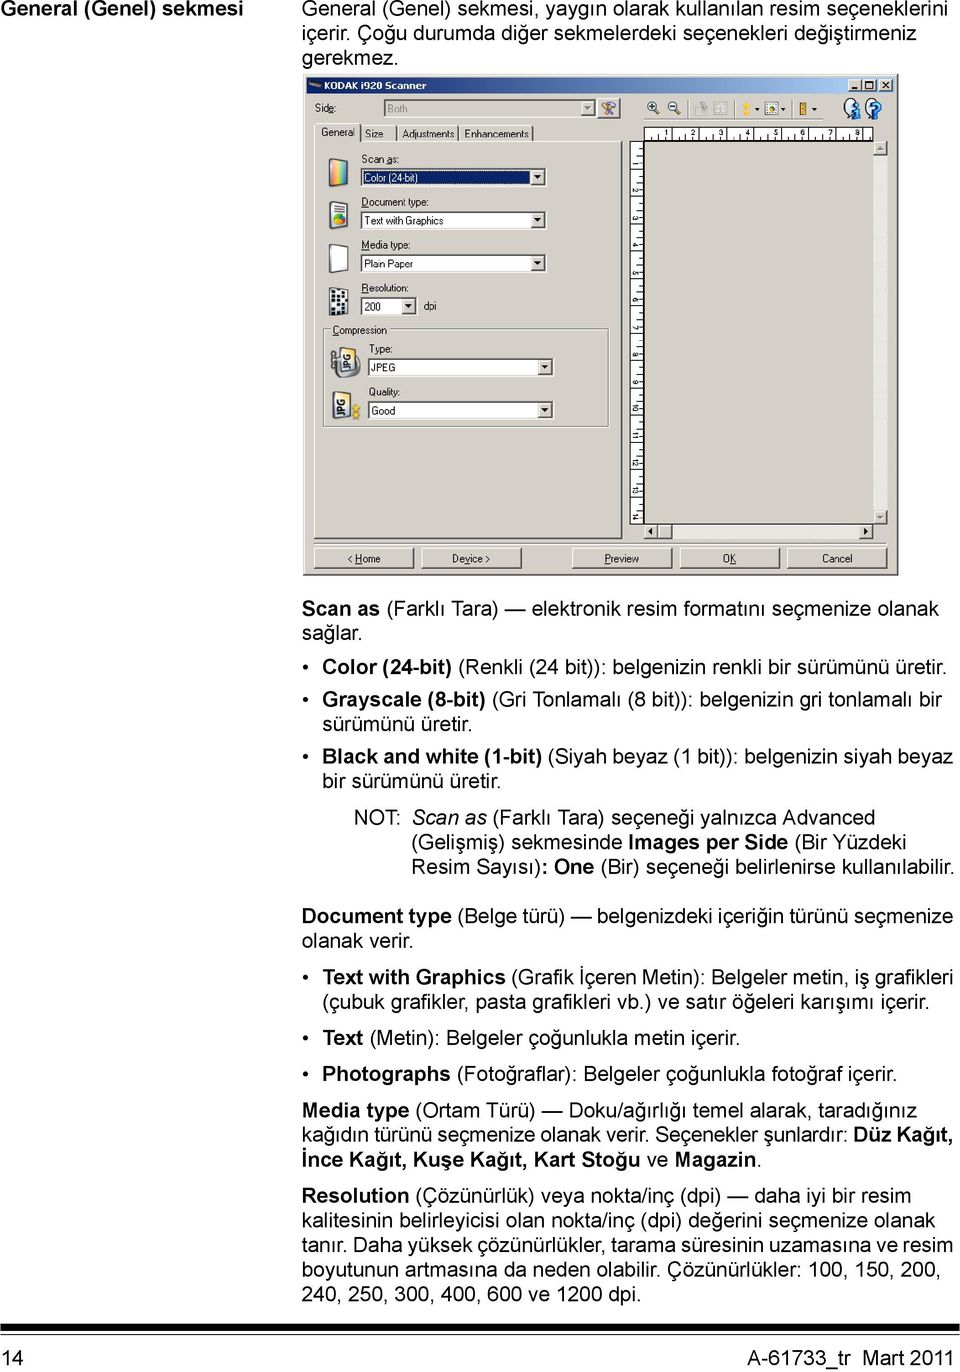 Grayscale (8-bit) (Gri Tonlamalı (8 bit)): belgenizin gri tonlamalı bir sürümünü üretir. Black and white (1-bit) (Siyah beyaz (1 bit)): belgenizin siyah beyaz bir sürümünü üretir.